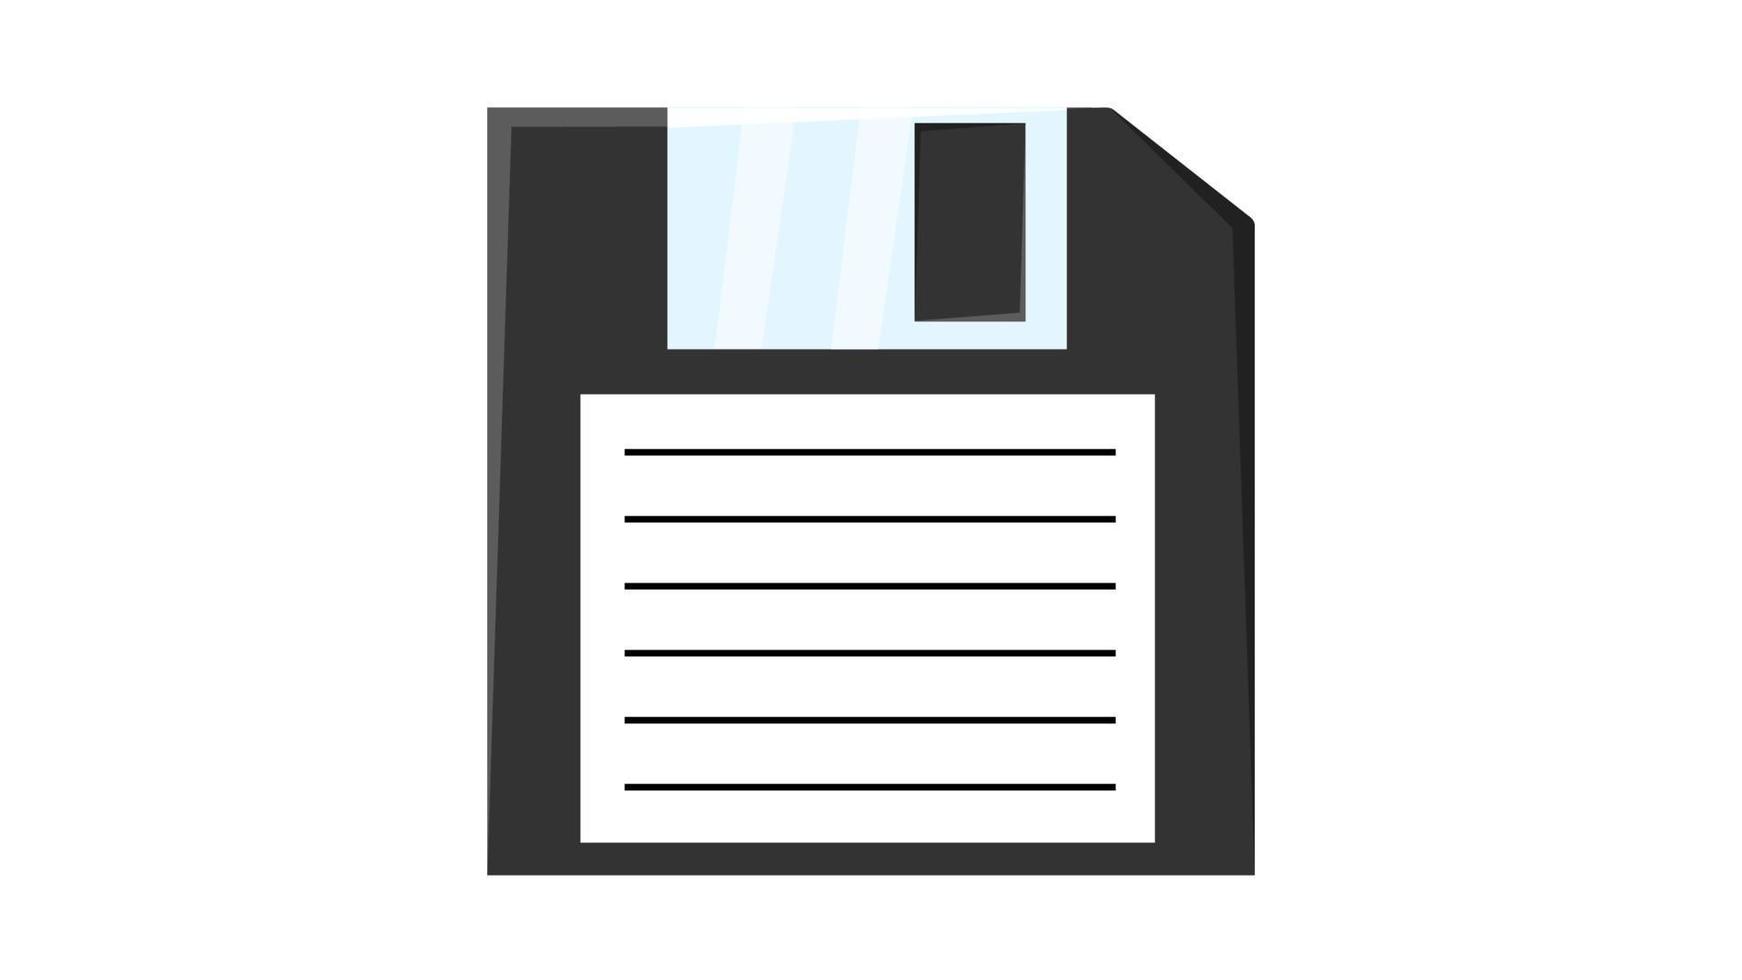 gammal retro årgång hipster diskett disk för dator till Lagra information, pc från 70-talet, 80-tal, 90-tal. svart och vit ikon. vektor illustration